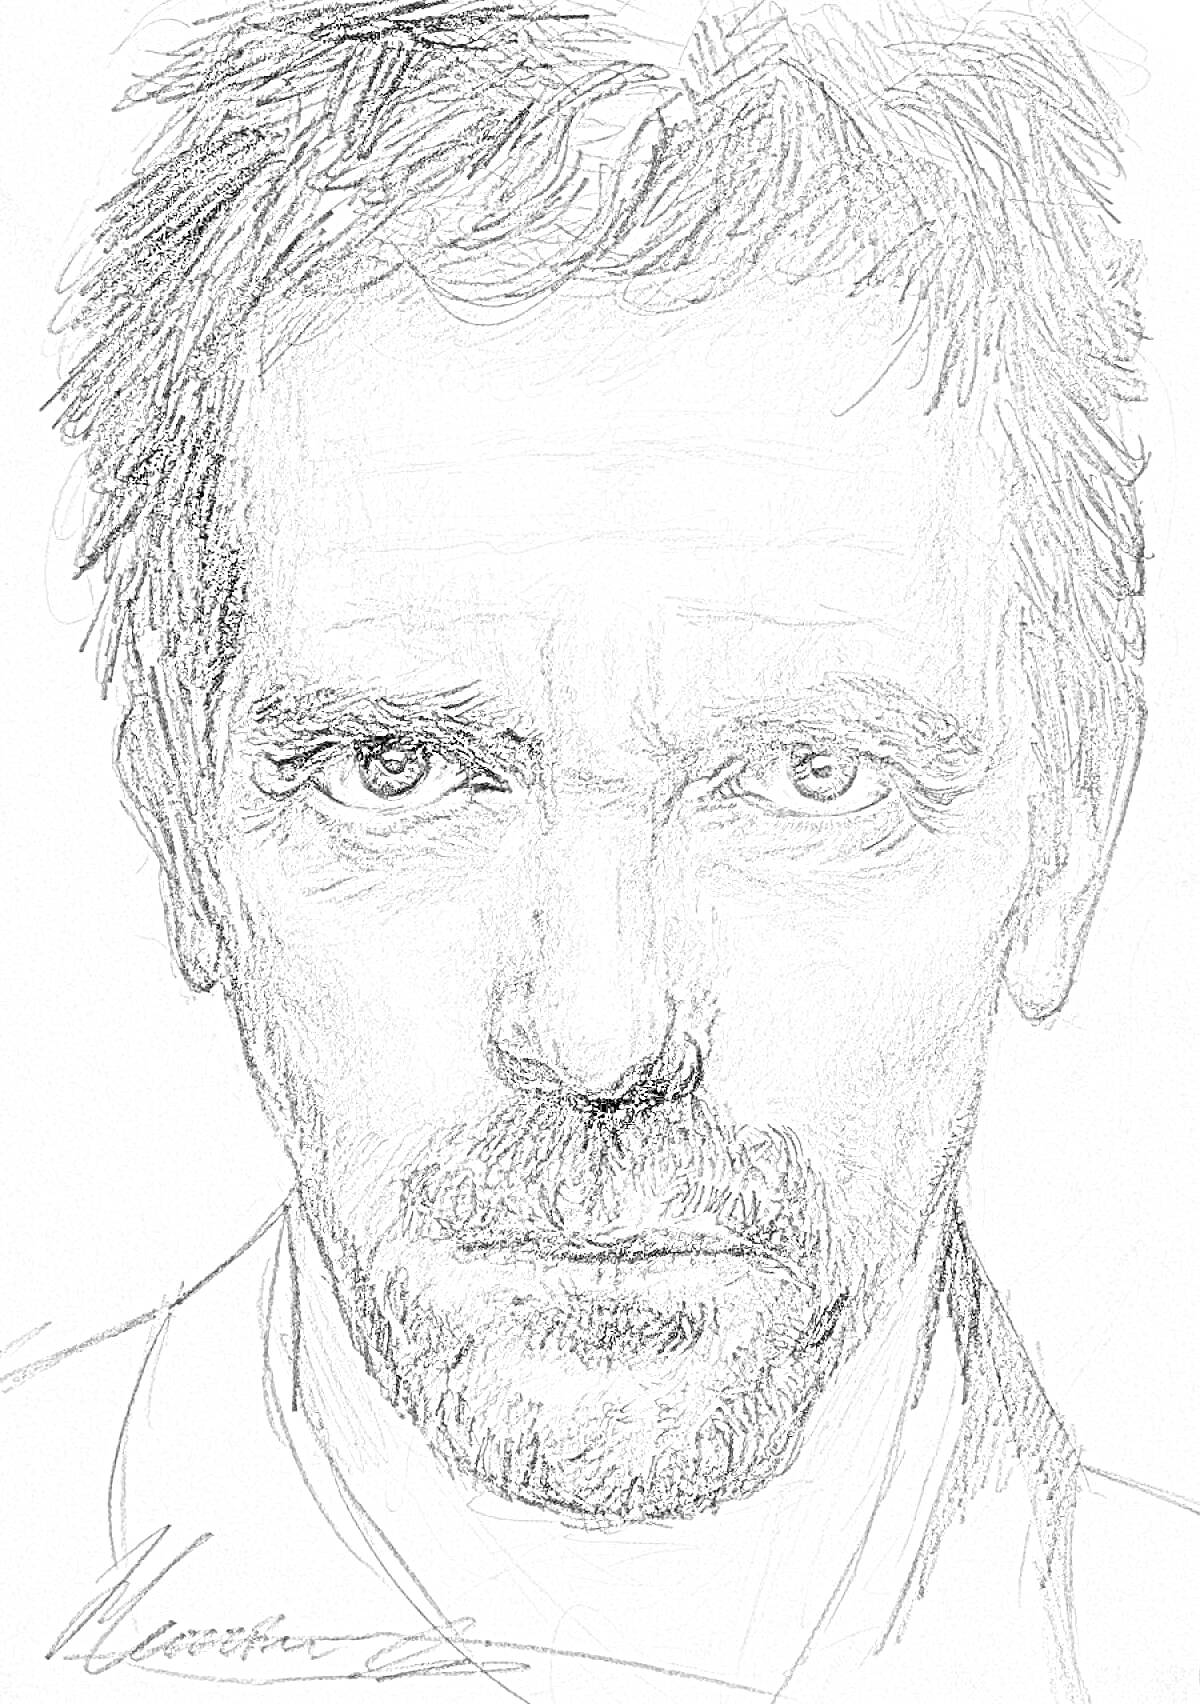 Раскраска Портрет мужчины с серьезным выражением лица в стиле графика, черно-белая раскраска